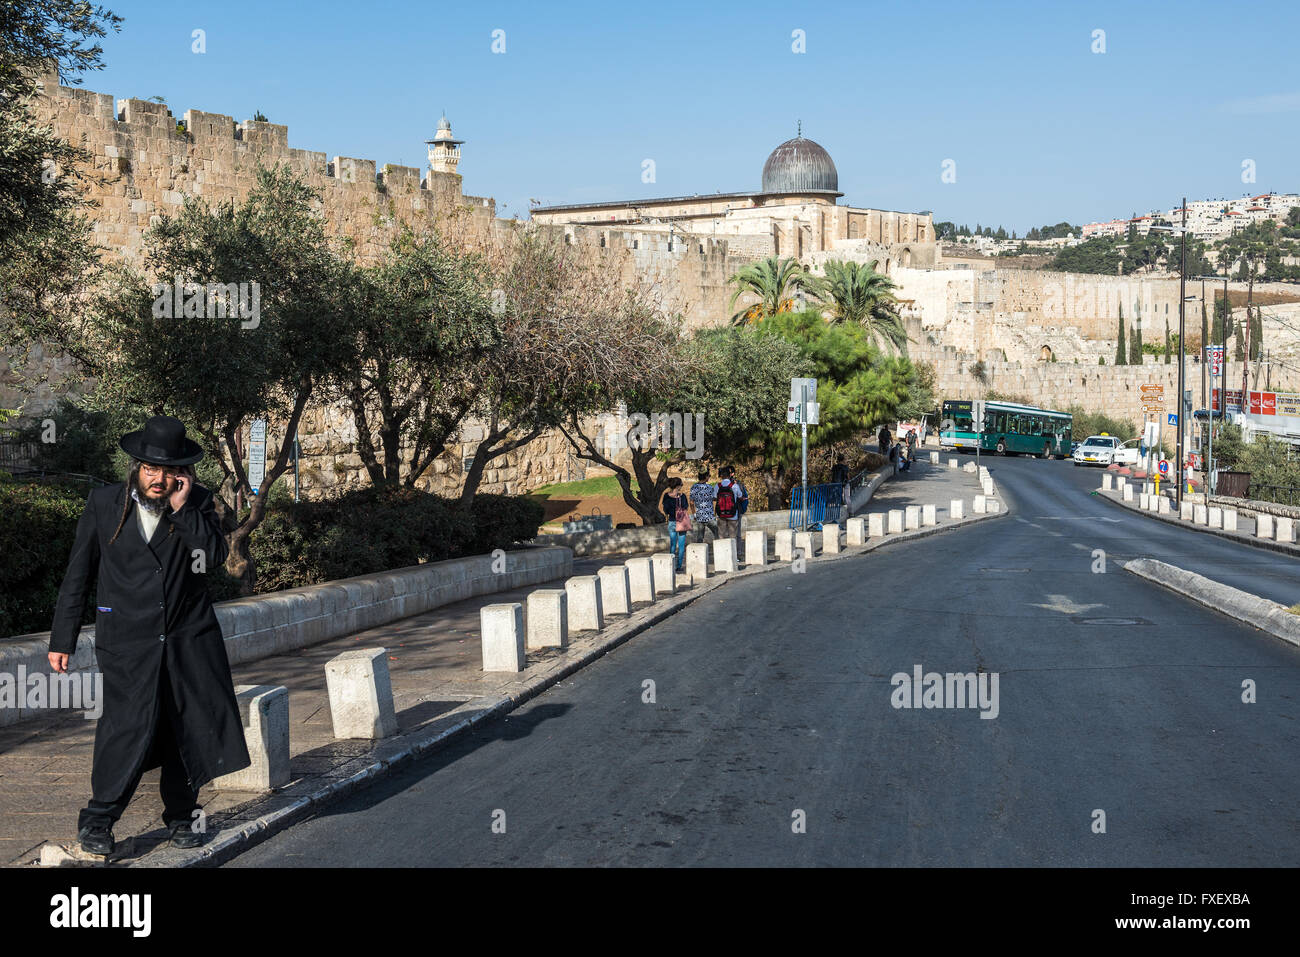 Ebreo ortodosso Il Ma'ale HaShalom street chiamato Papa's Road a Gerusalemme, Israele. La Moschea di Al-Aqsa sullo sfondo Foto Stock